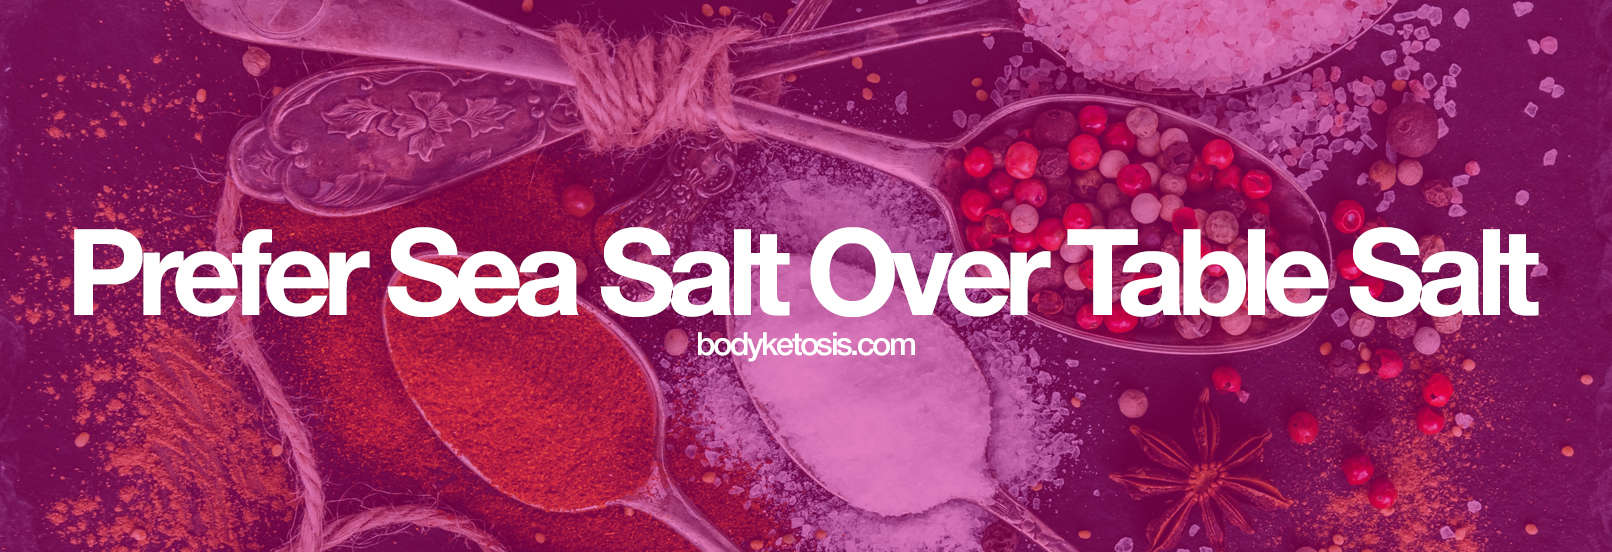 sea salt keto food list